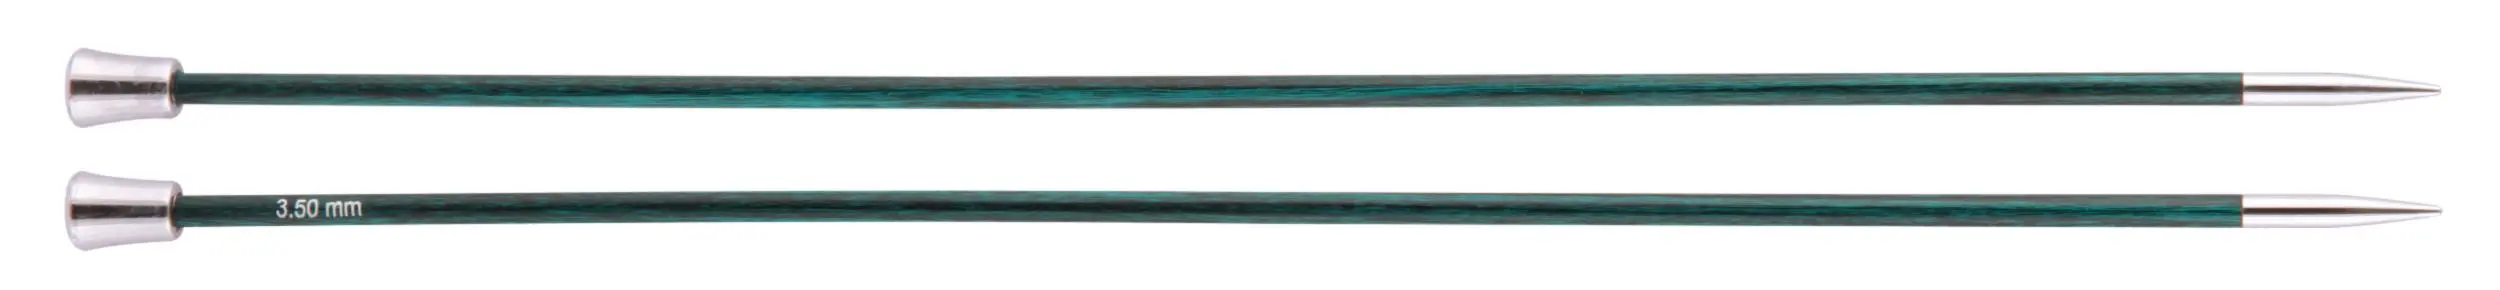 29193 Спиці прямі Royale KnitPro, 30 см, 3.50 мм